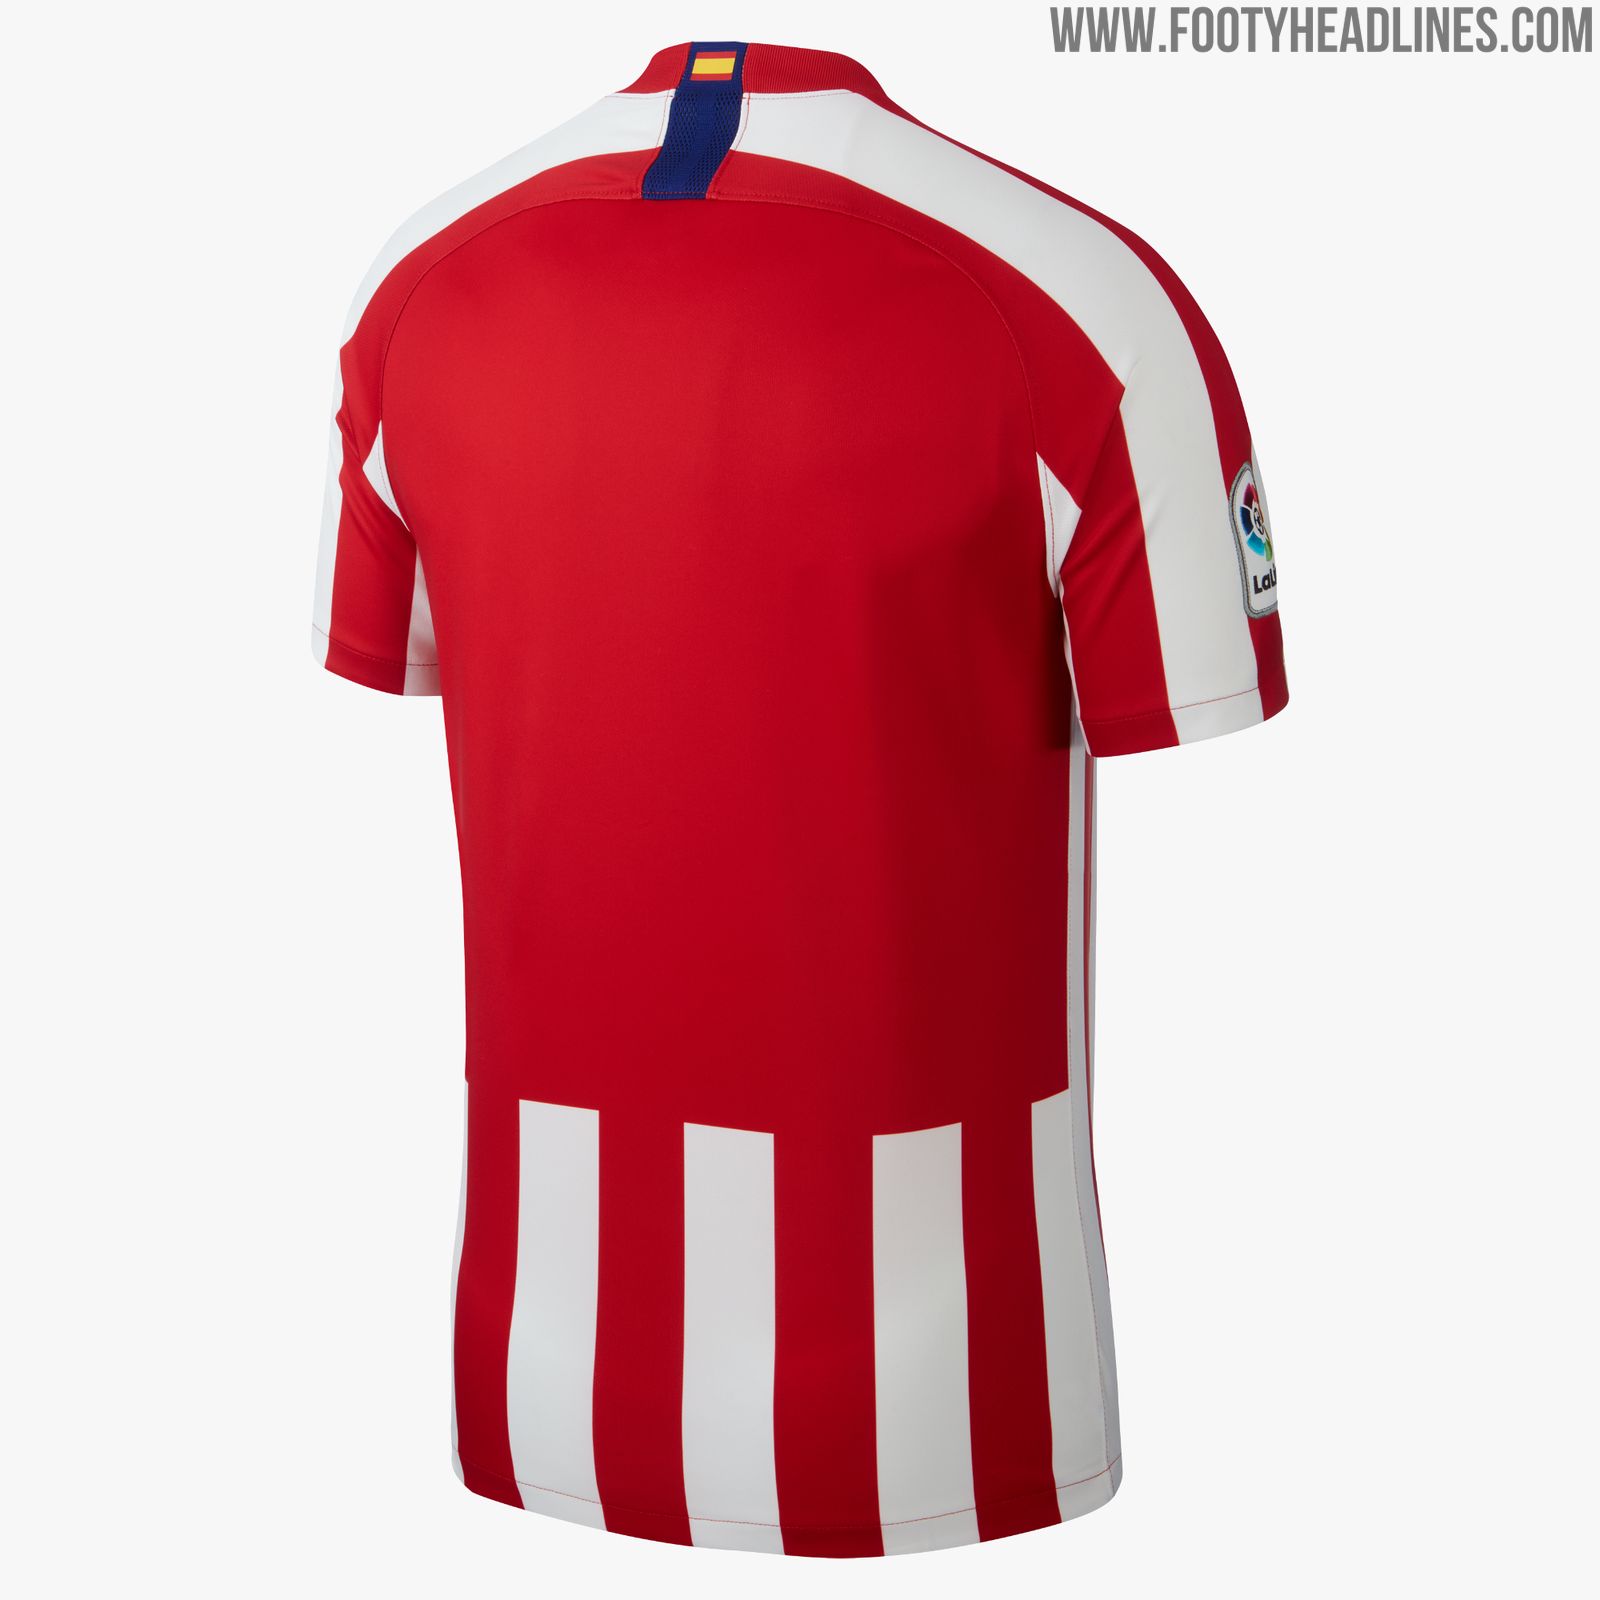 Atlético Madrid 19-20 Home Kit Revealed - Footy Headlines